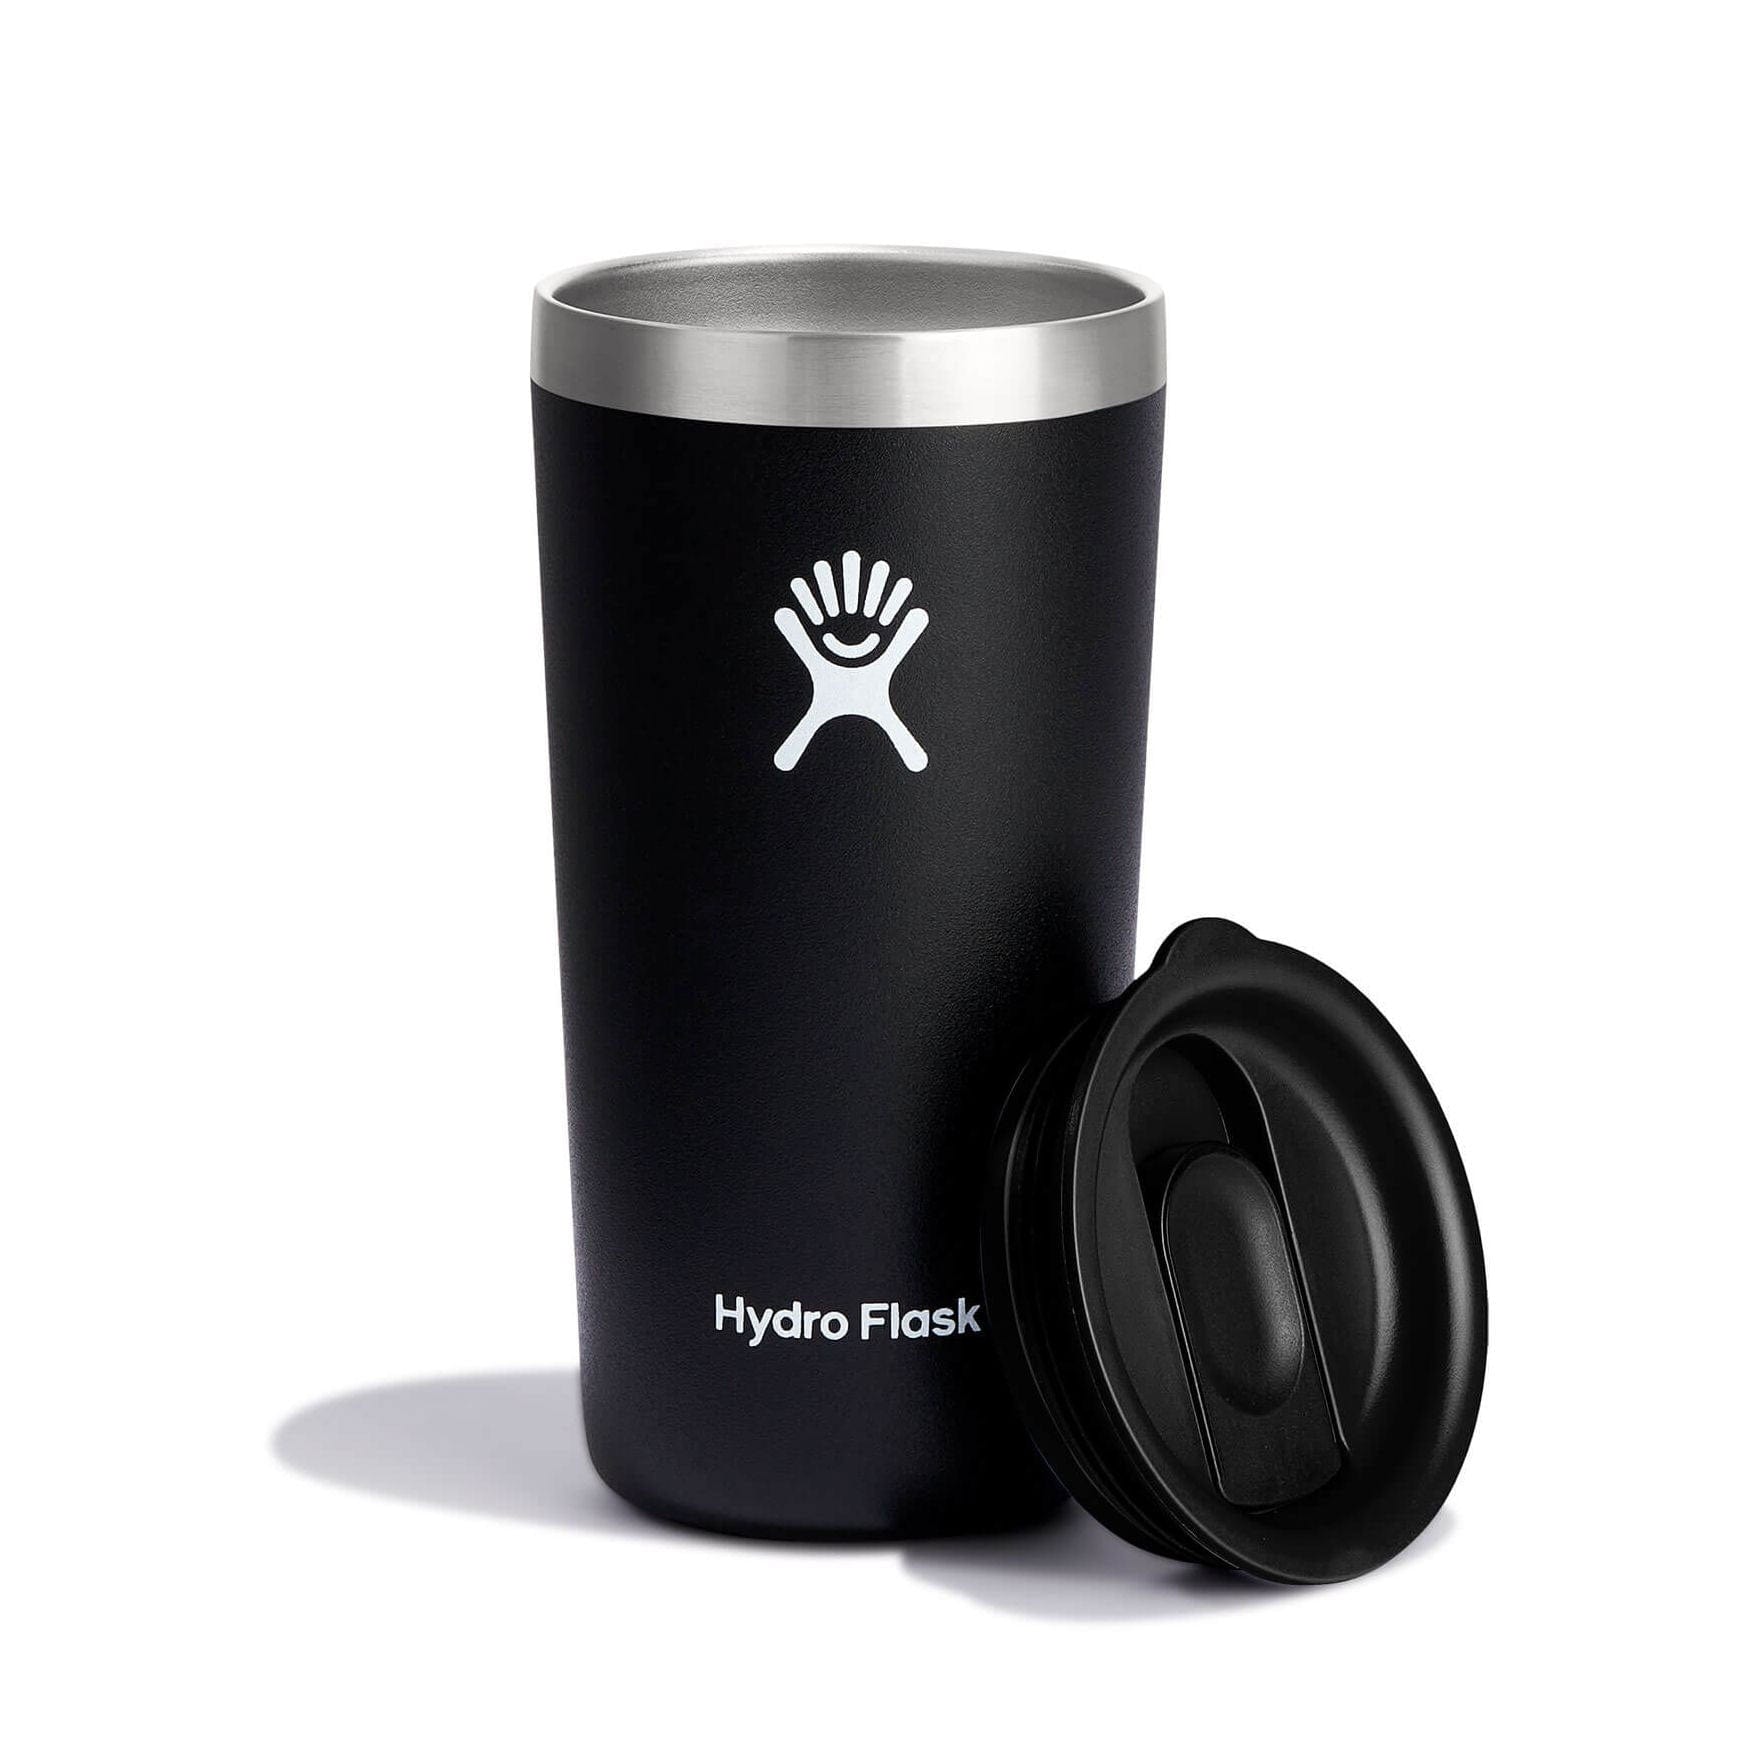 Hydro Flask 12 oz Coffee Mug Agave